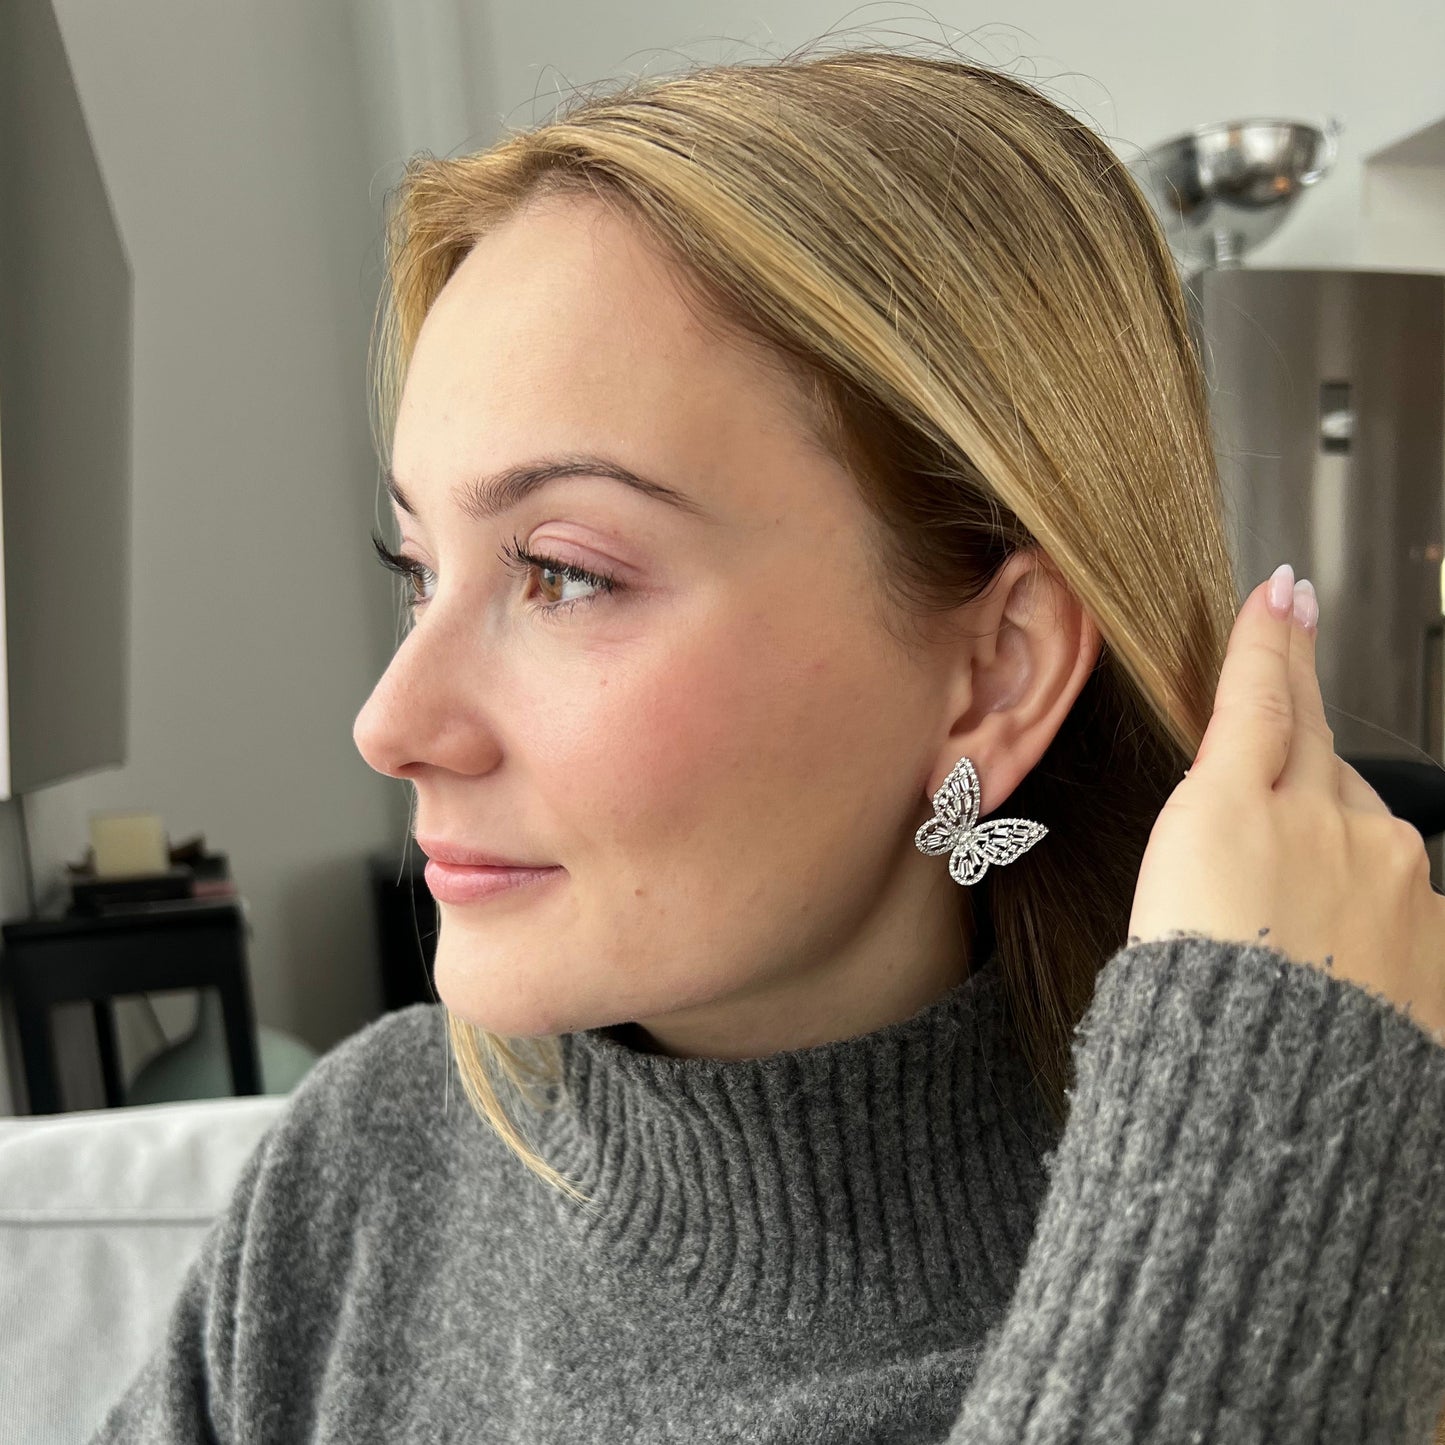 Pearl butterfly earrings